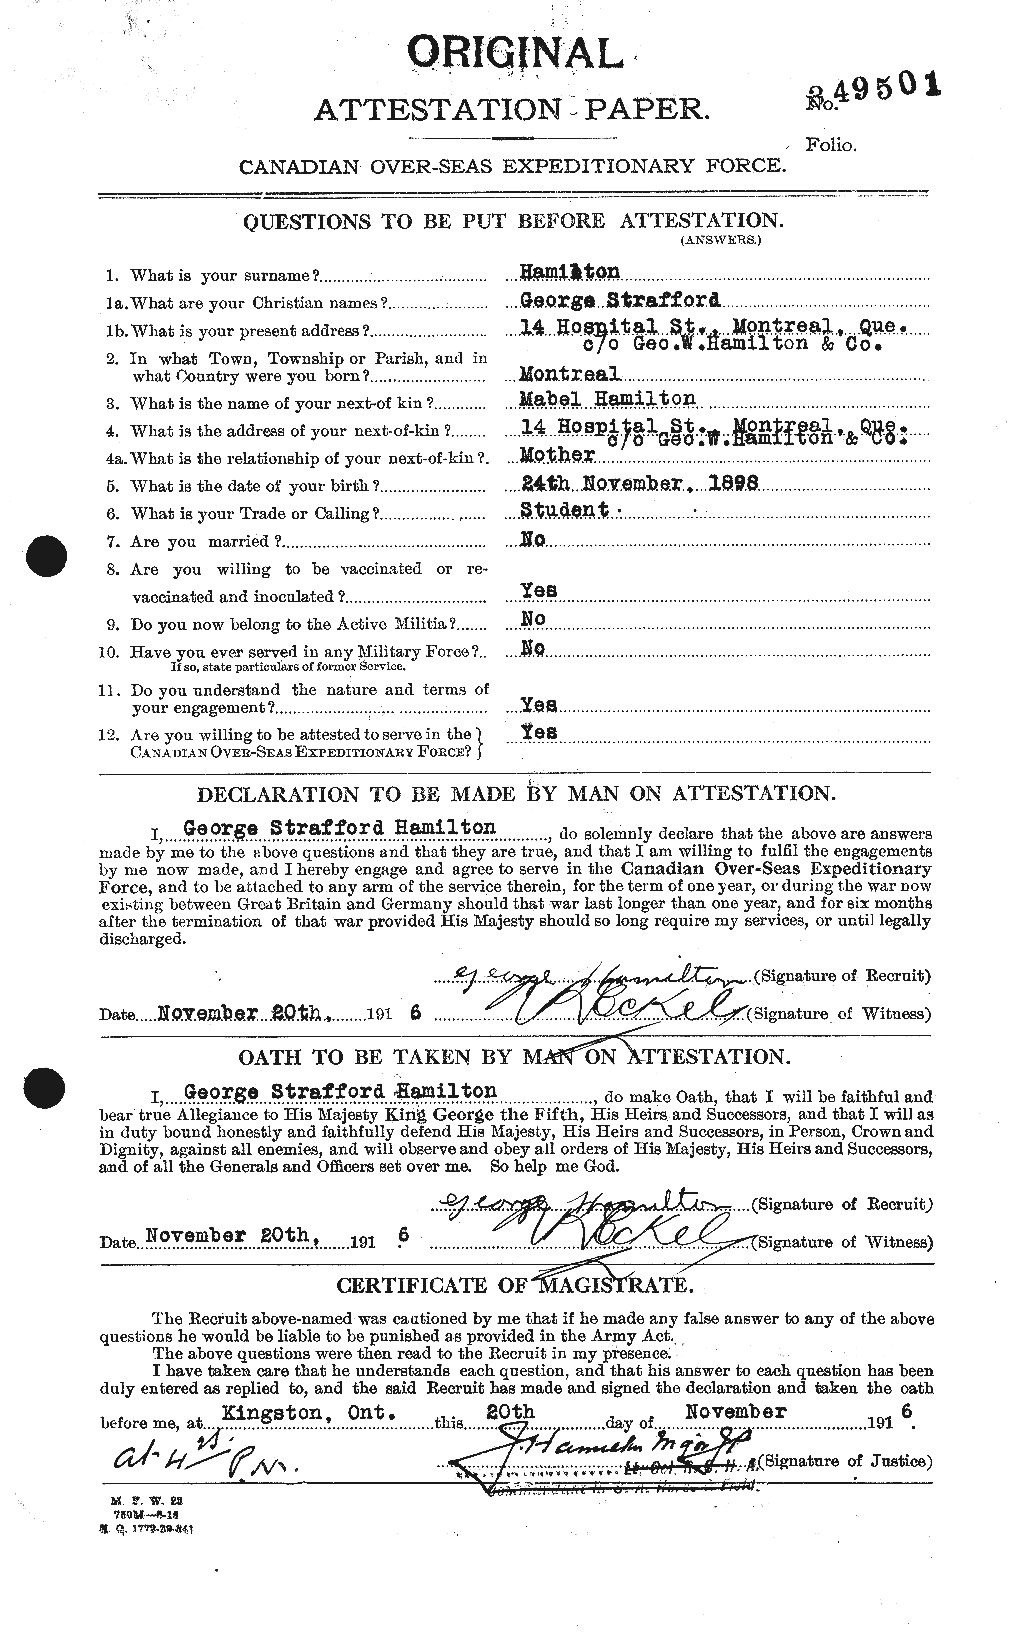 Dossiers du Personnel de la Première Guerre mondiale - CEC 372473a